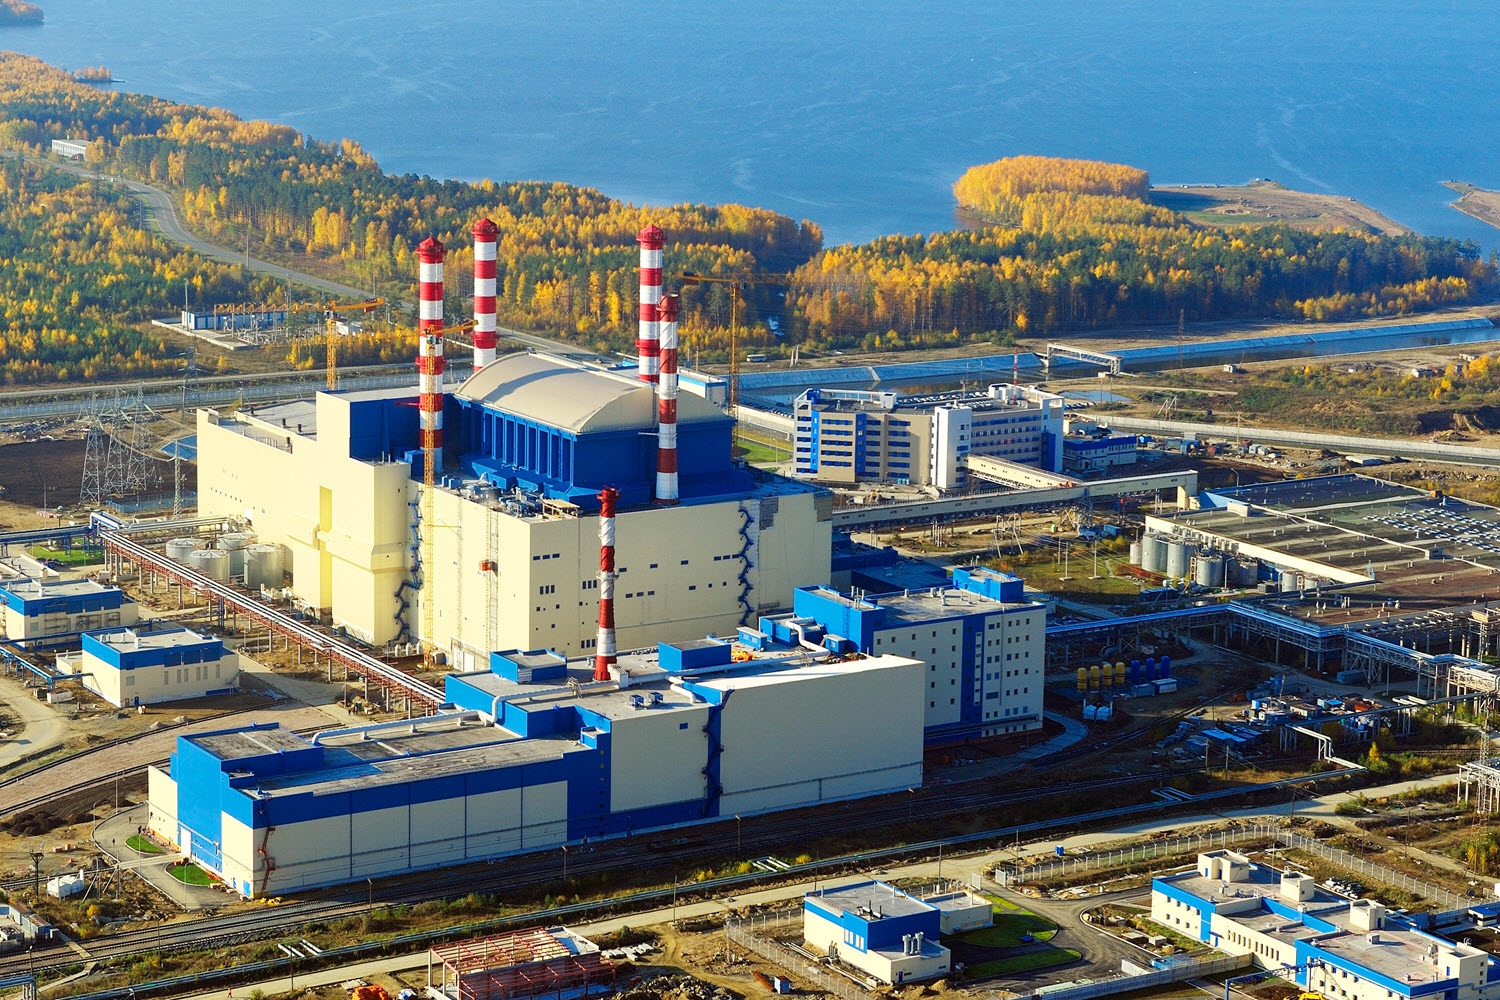 18 августа 2019 г. четвертый энергоблок Белоярской АЭС отключился из-за ошибки одной из систем.